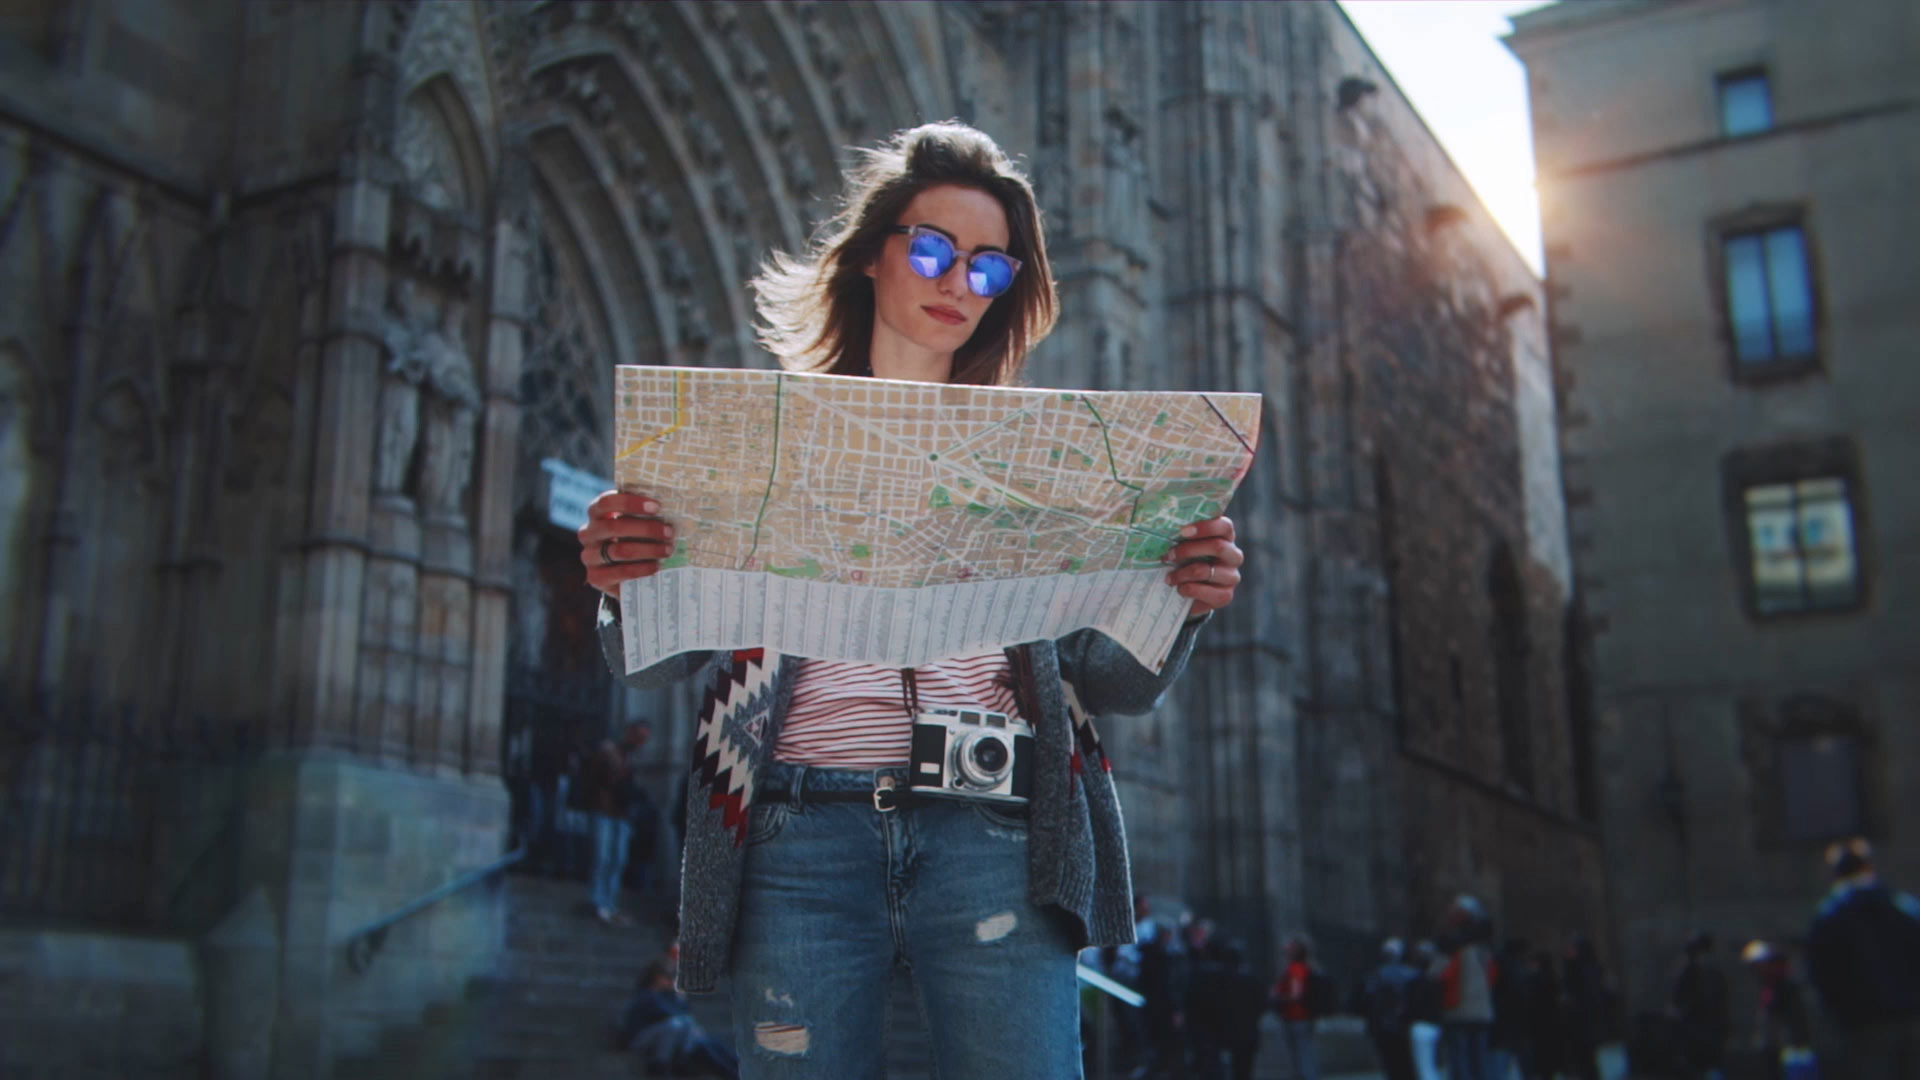 Turista a Barcellona che guarda la mappa con la Cattedrale di Barcellona sullo sfondo.